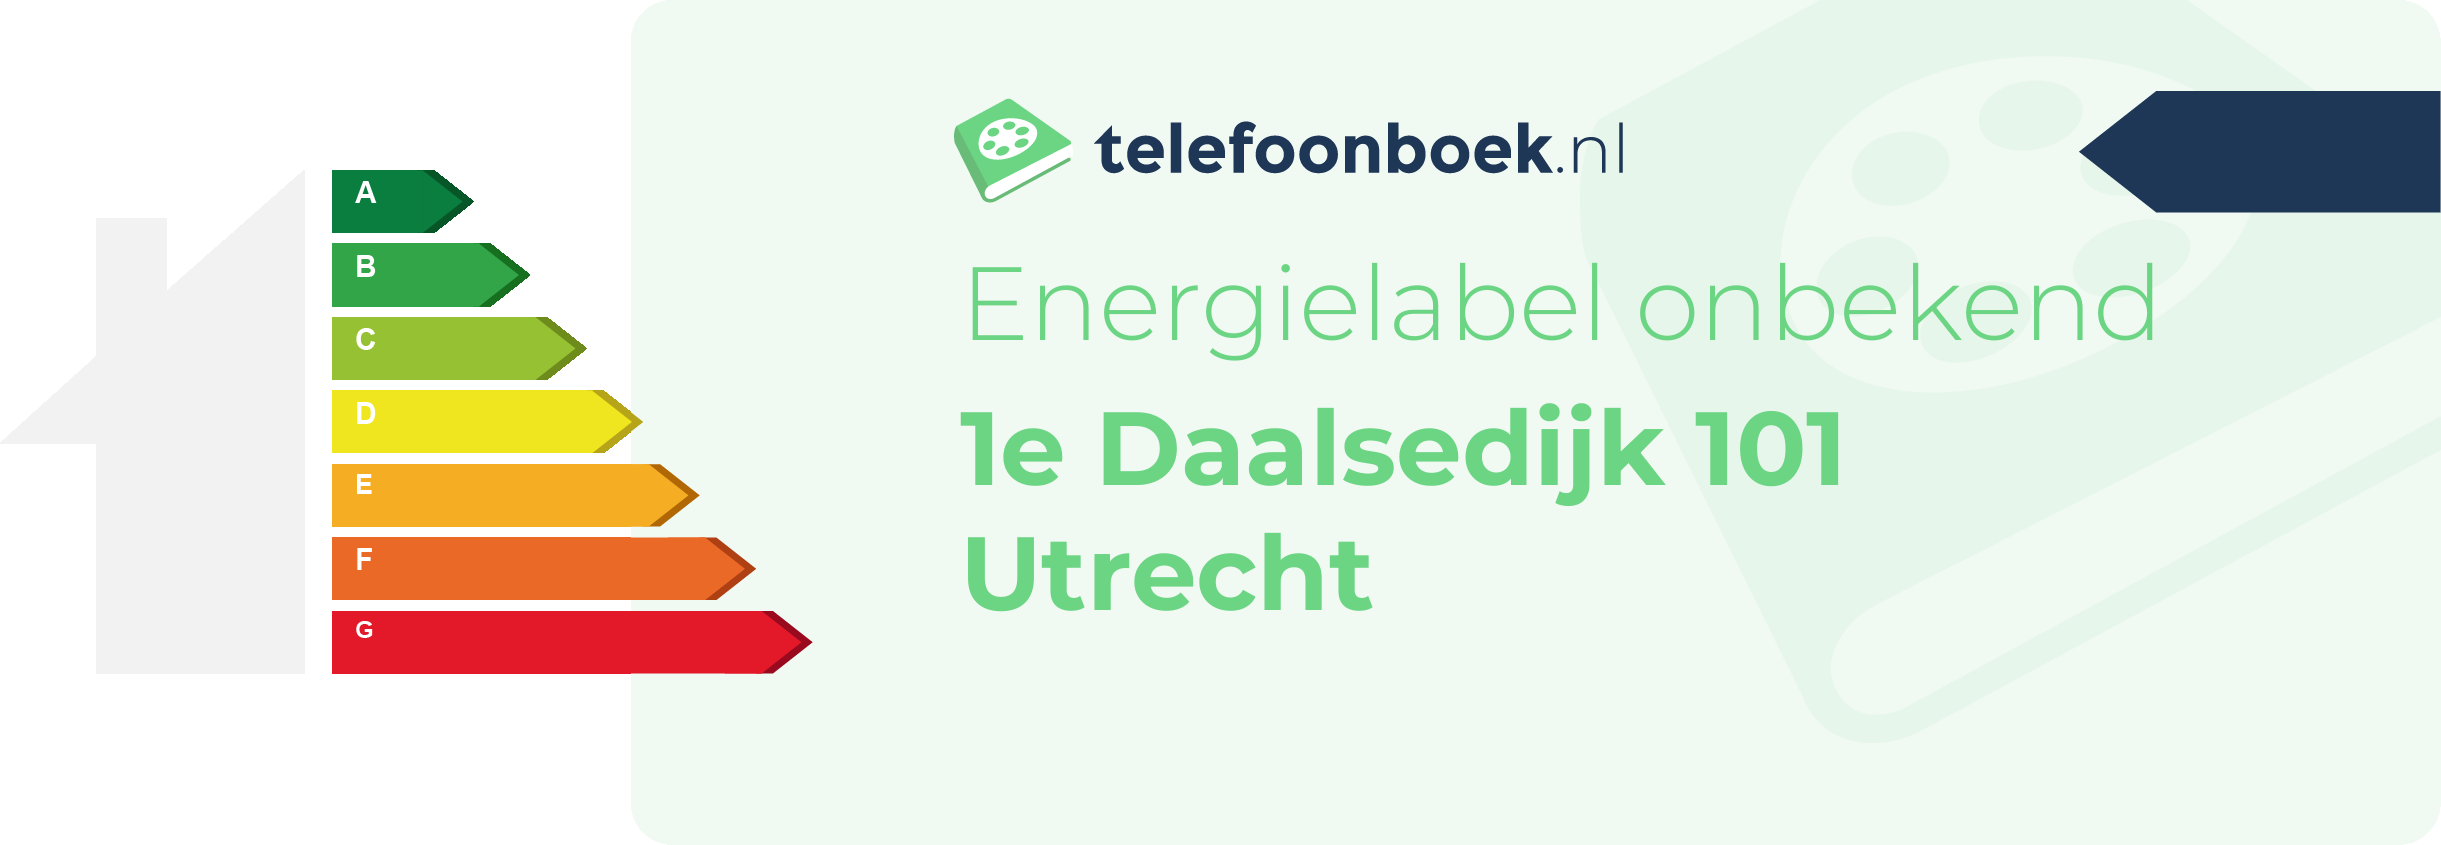 Energielabel 1e Daalsedijk 101 Utrecht